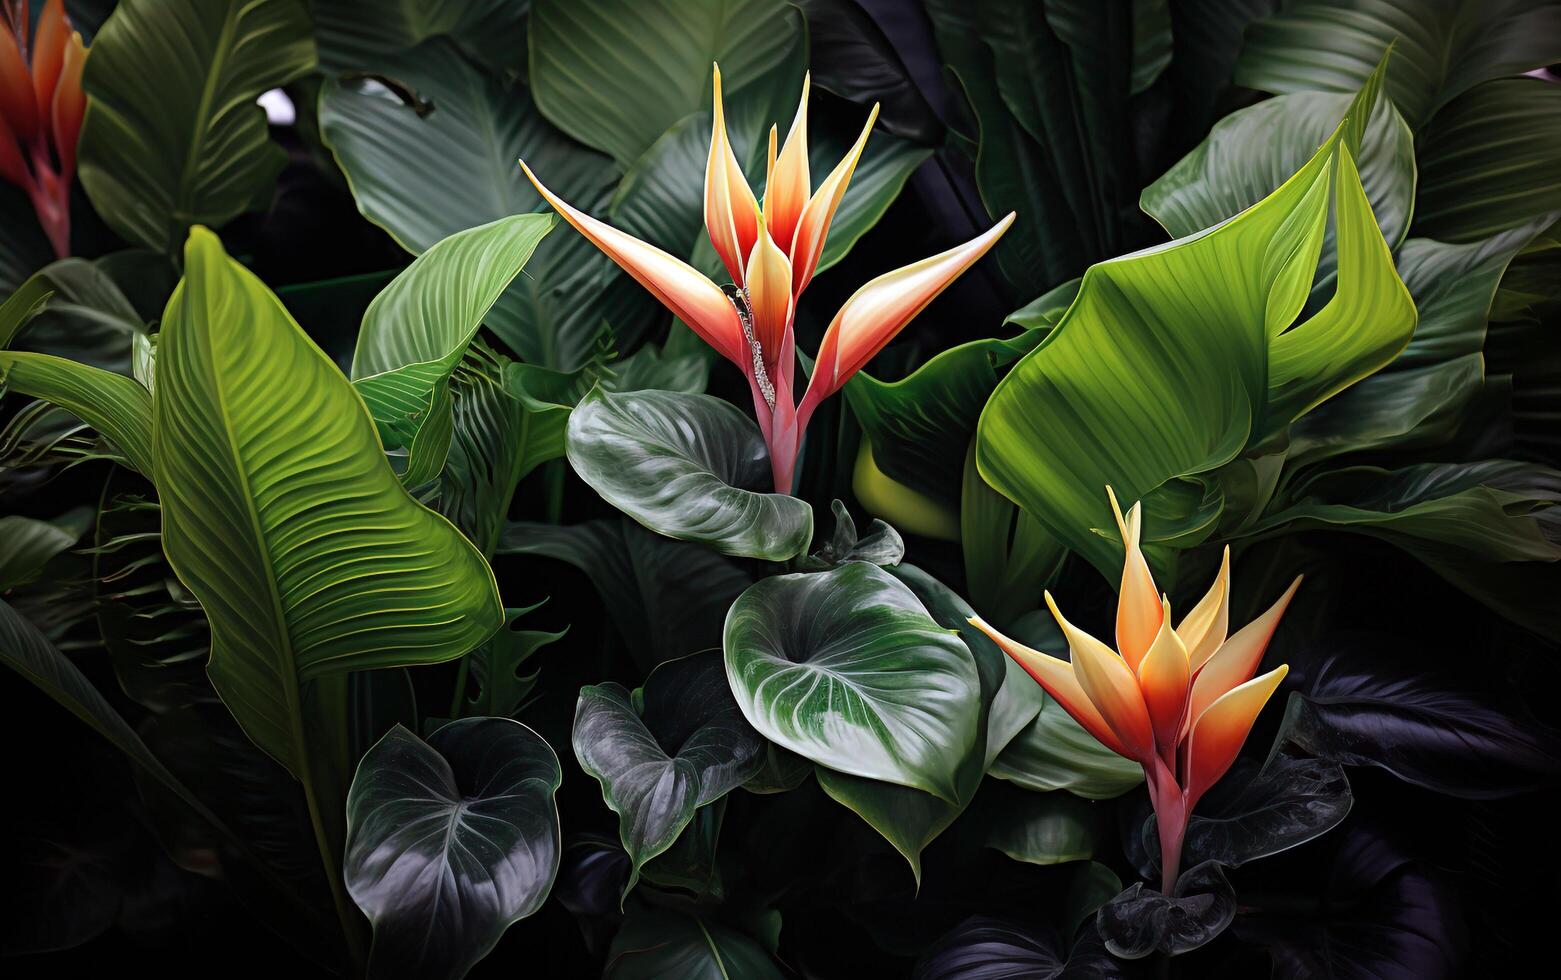 criativo floral selva abstrato exótico tropical folhas foto